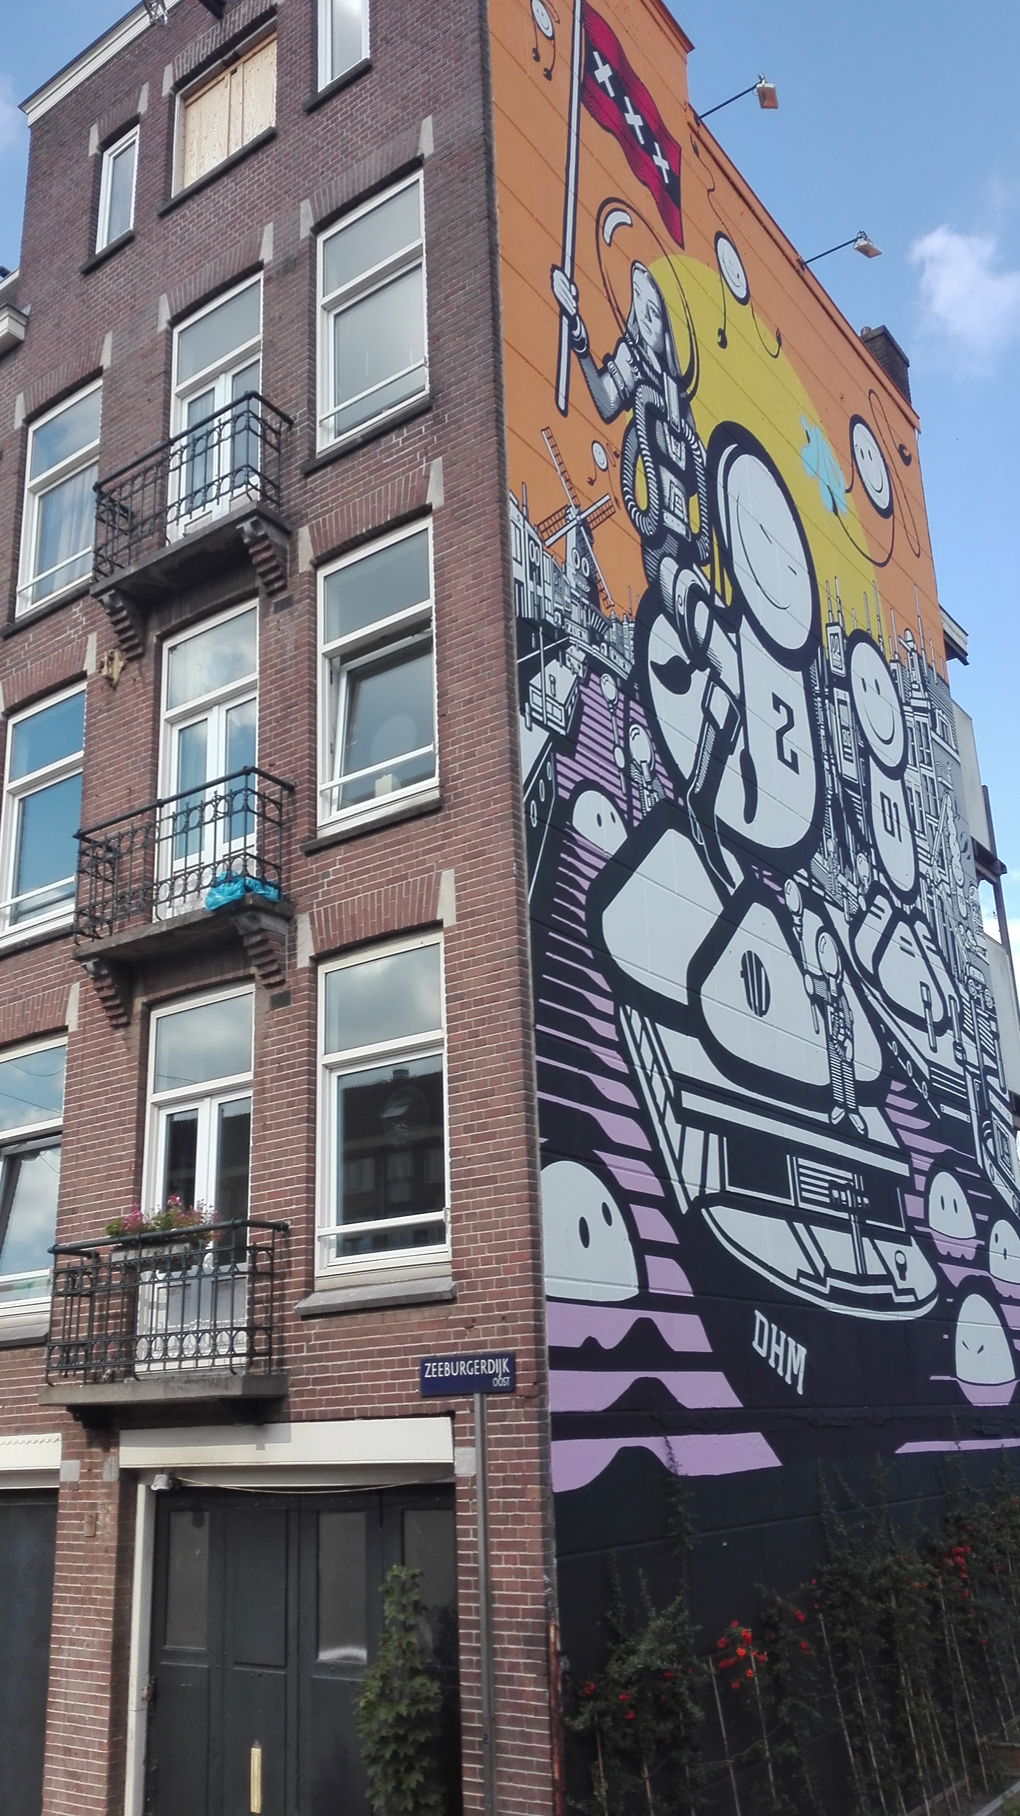 Amsterdam house with graffiti on the side, beautiful graffiti art.